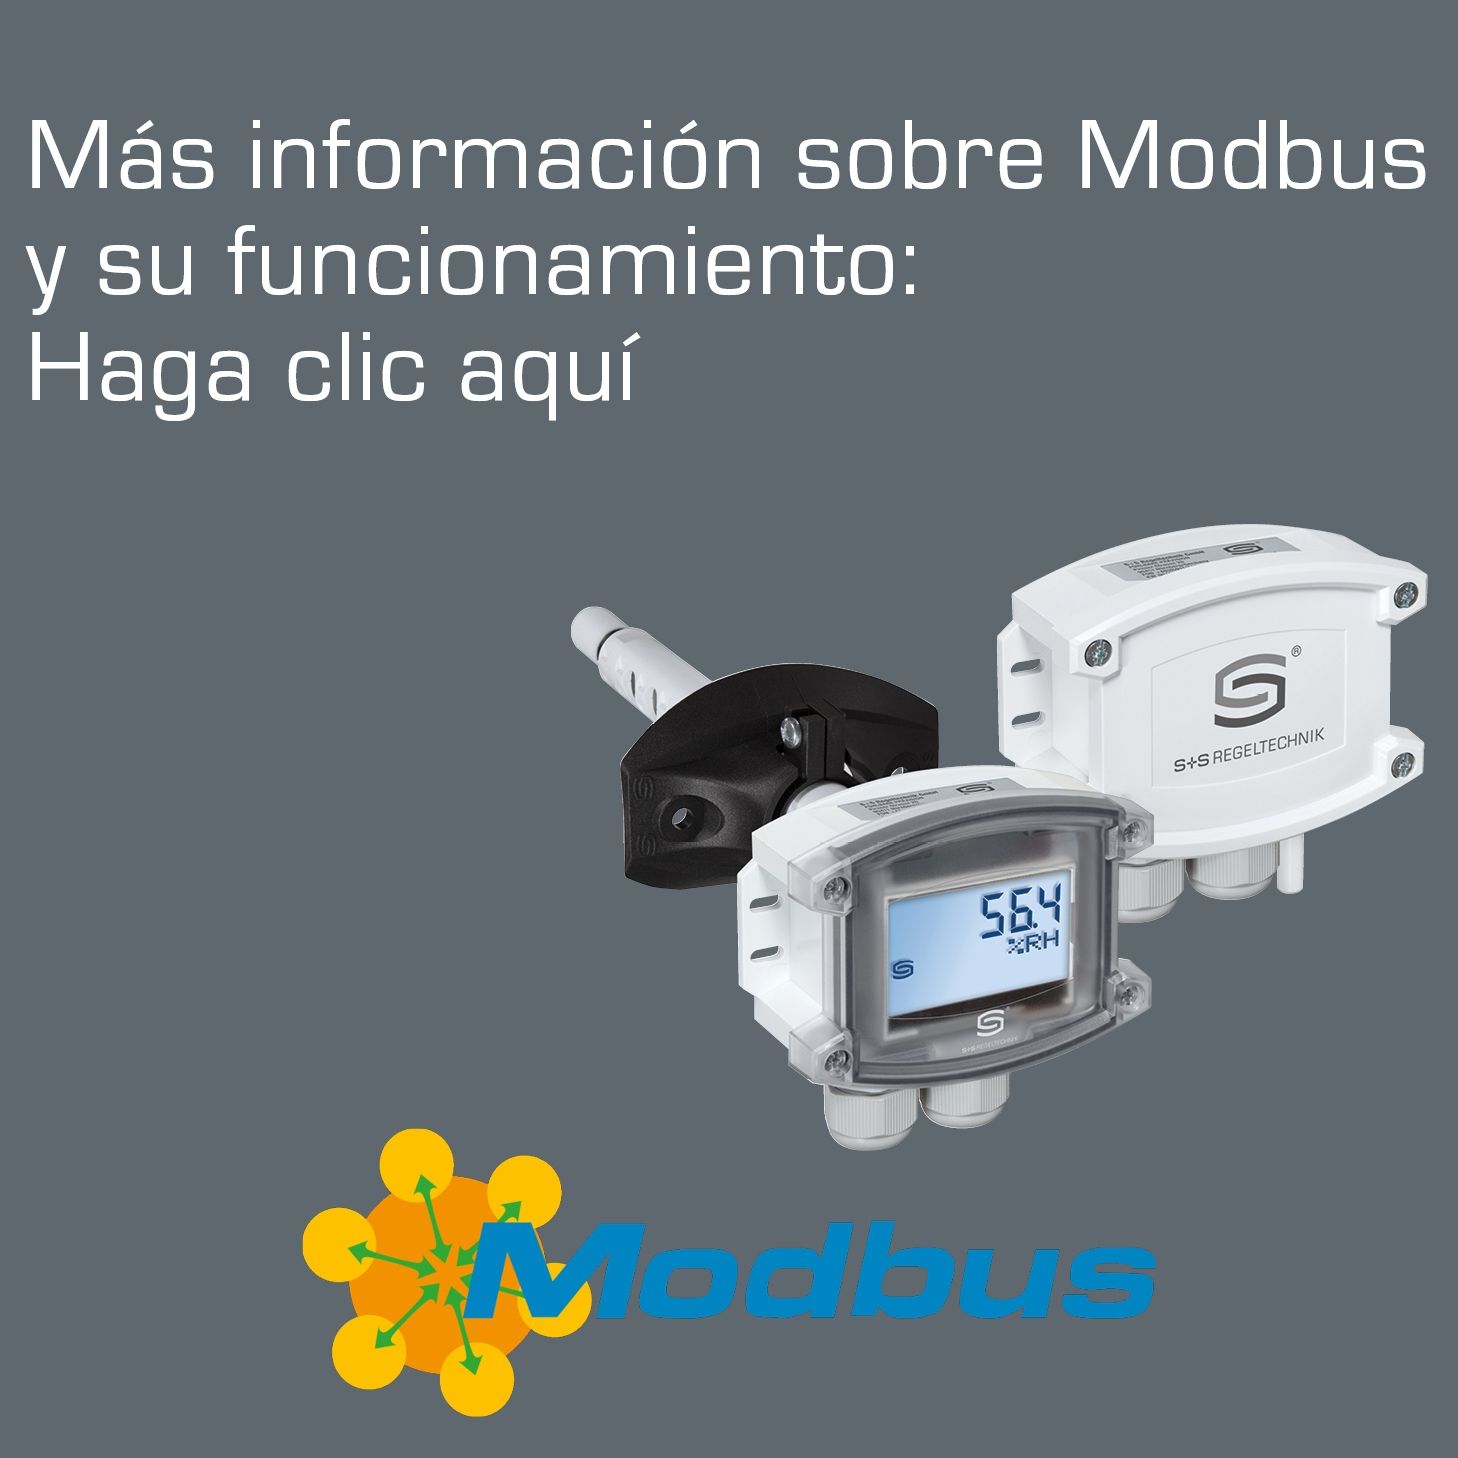 Banner Cabecera Más información sobre Modbus. Logotipo de Modbus a la derecha y dos sensores S+S con Modbus en el centro de la imagen